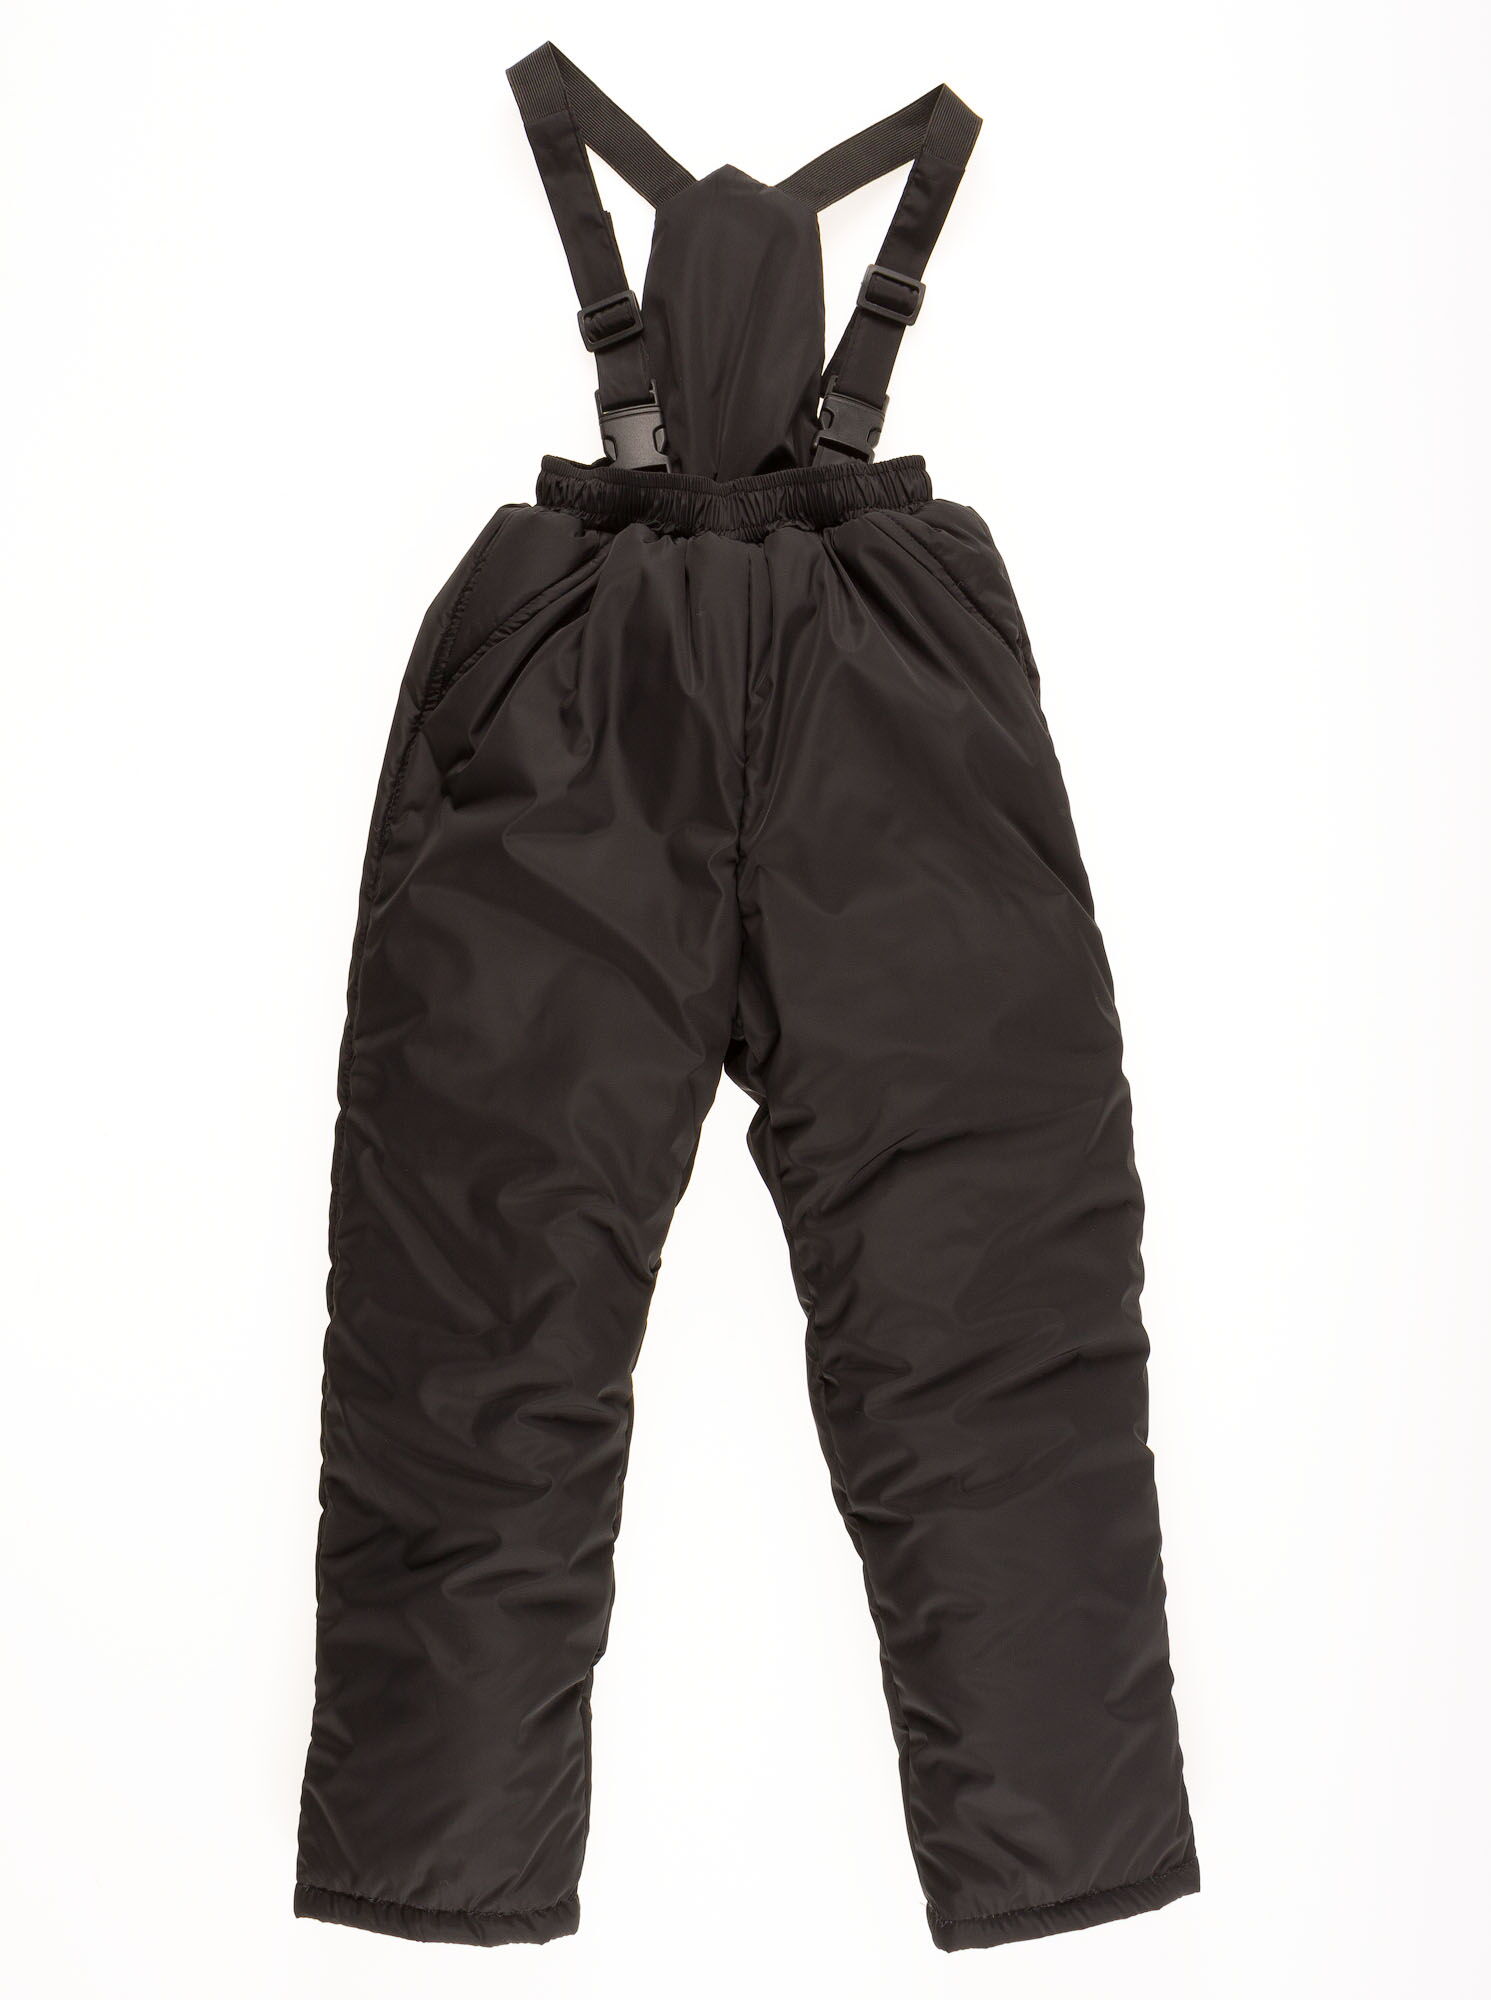 Комбинезон зимний раздельный для мальчика (куртка+штаны) Одягайко геометрия черный 20088+01241О - Украина